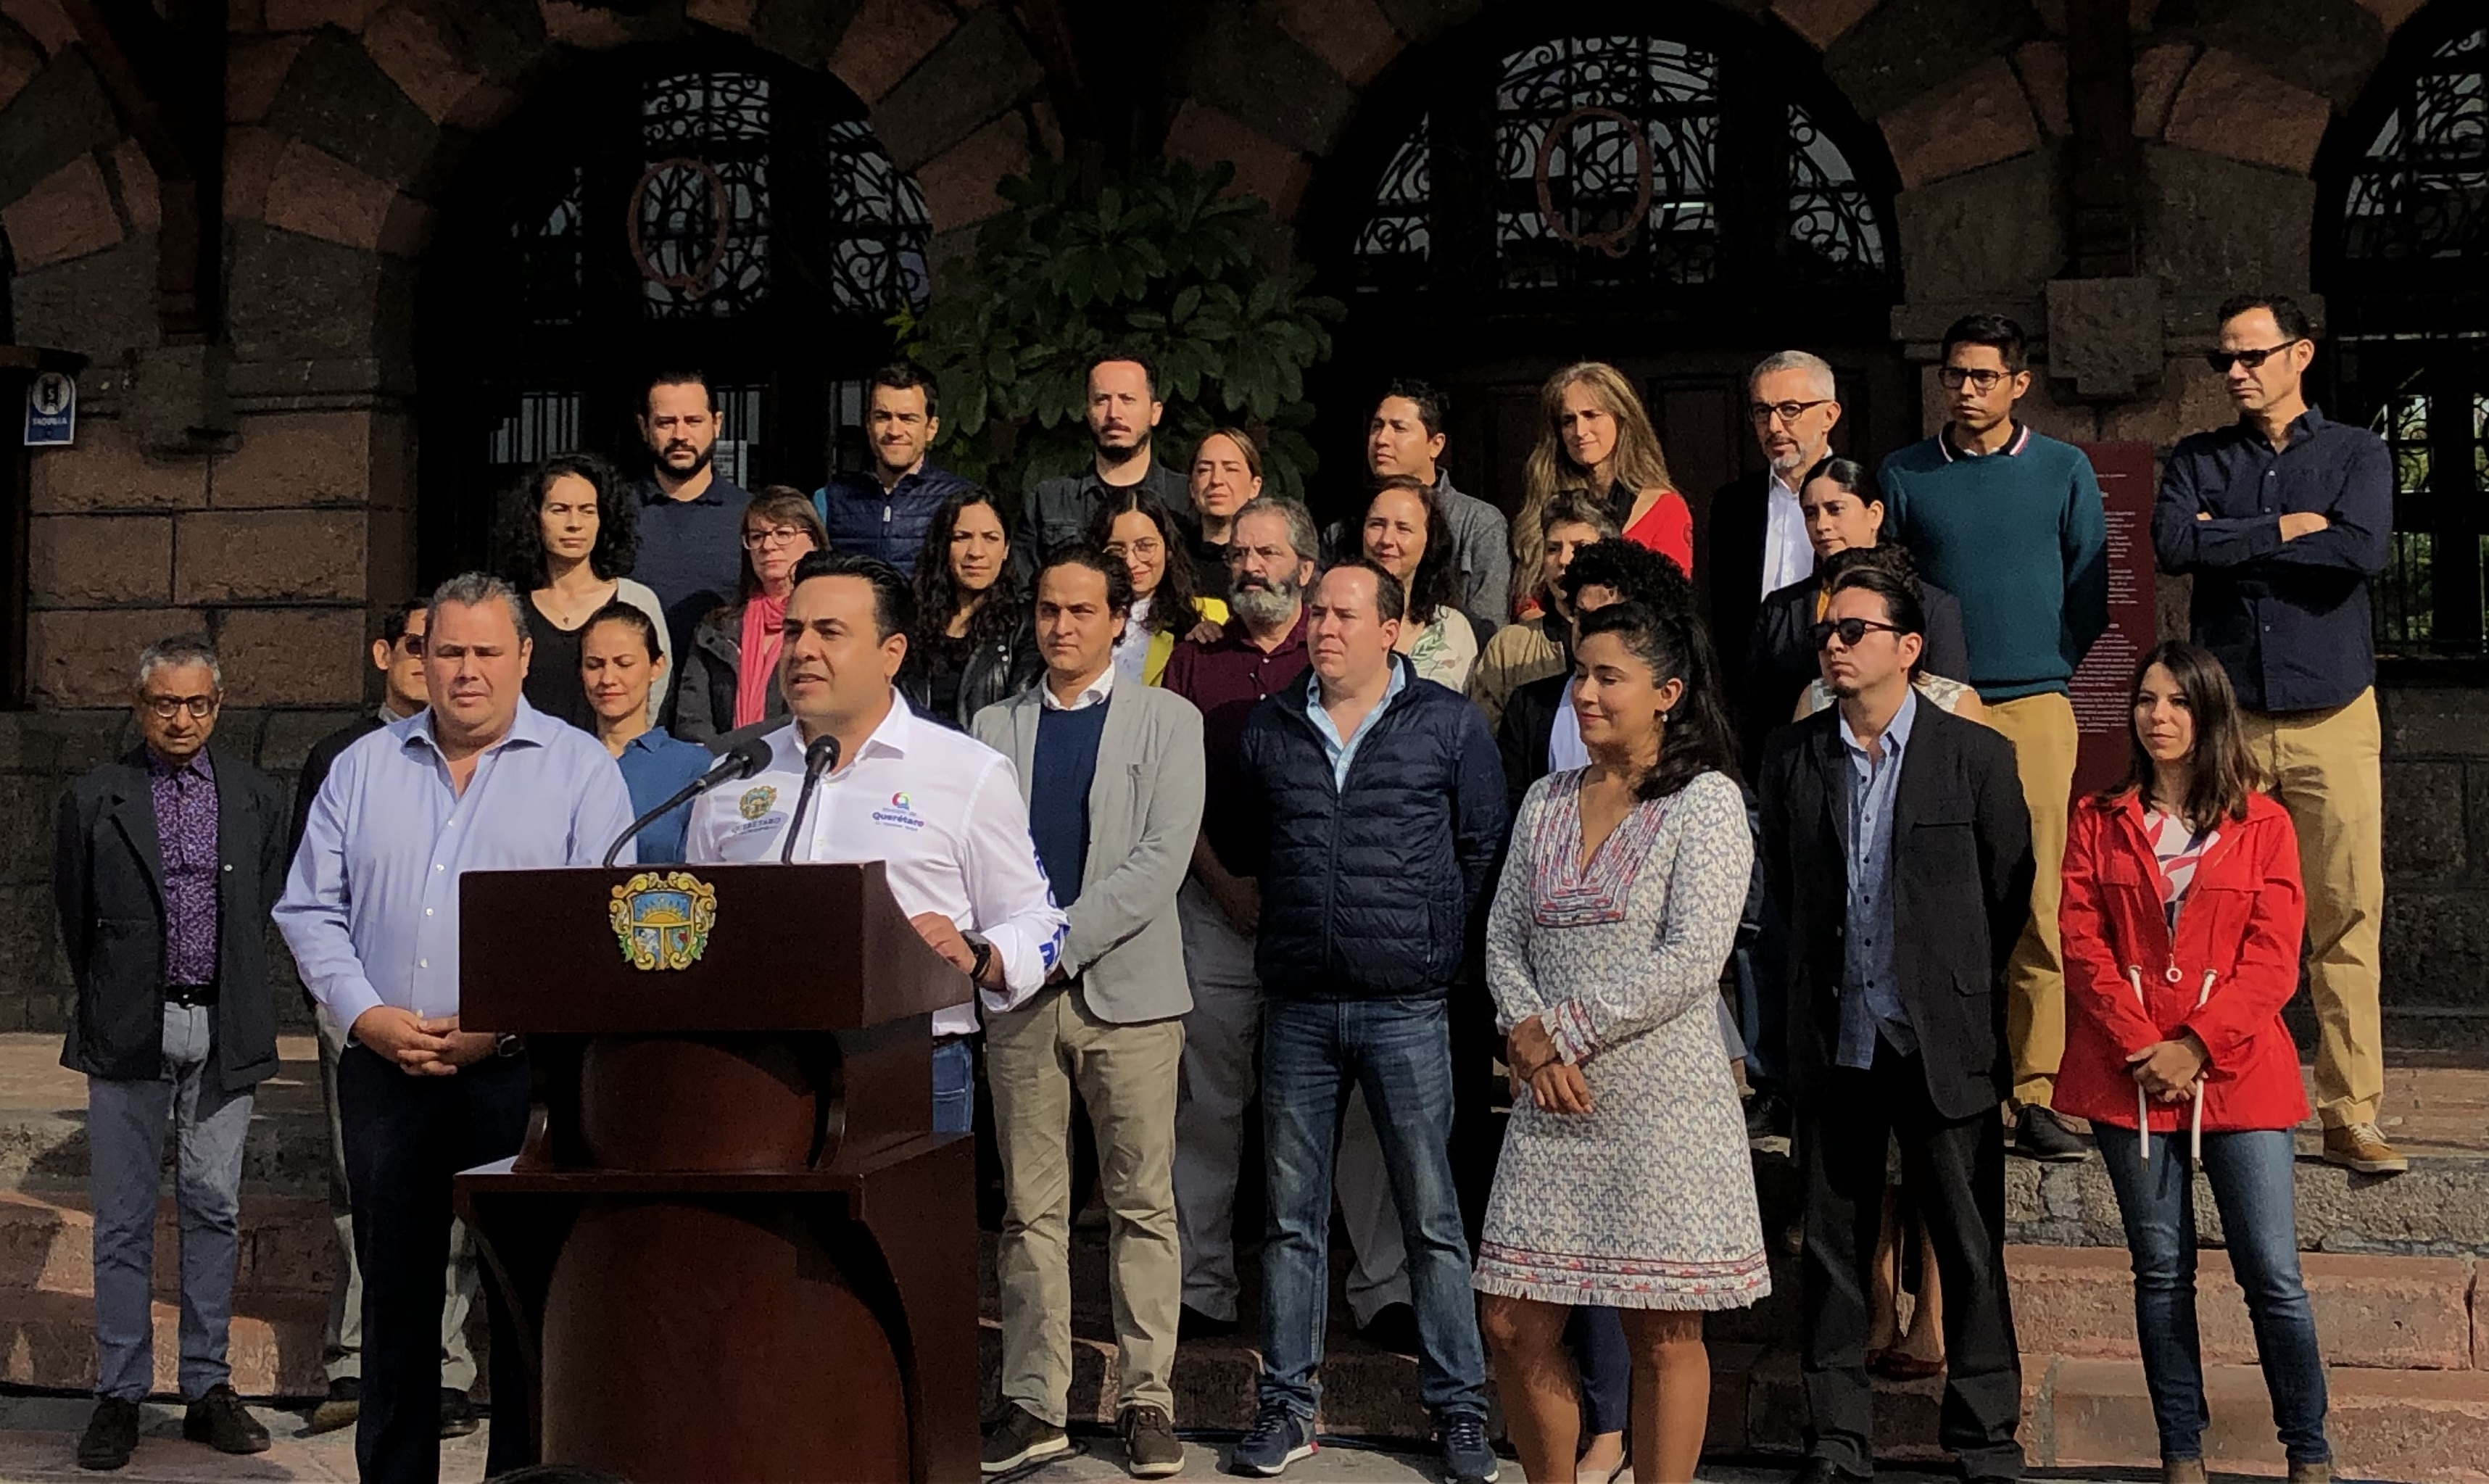  Querétaro se compromete a 23 acciones tras nombramiento de “Ciudad Creativa del Diseño”